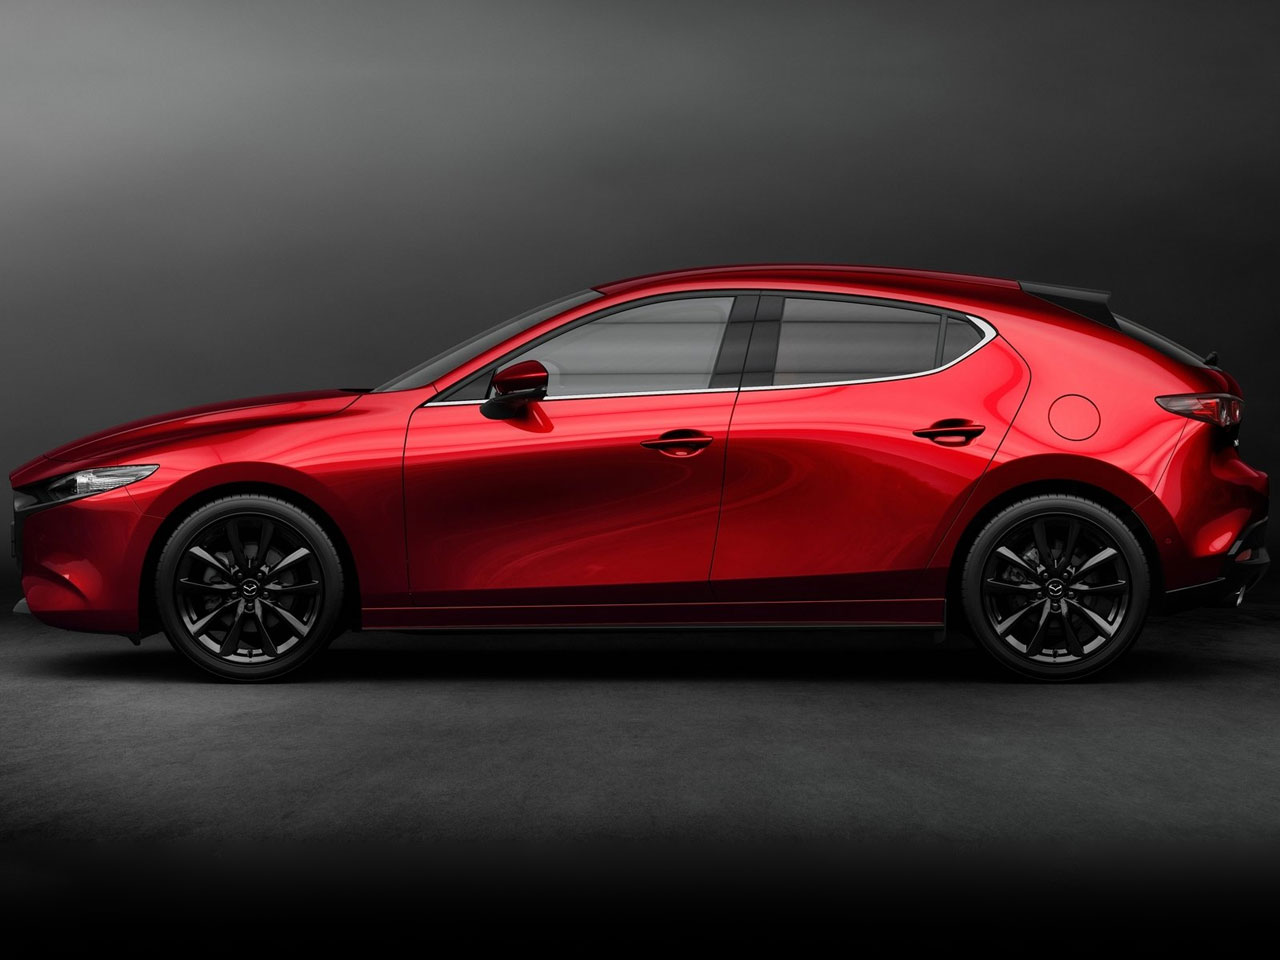 ¿Volveremos a ver un Mazda3 MPS sobre esta generación? Es posible que sí, en el año 2021